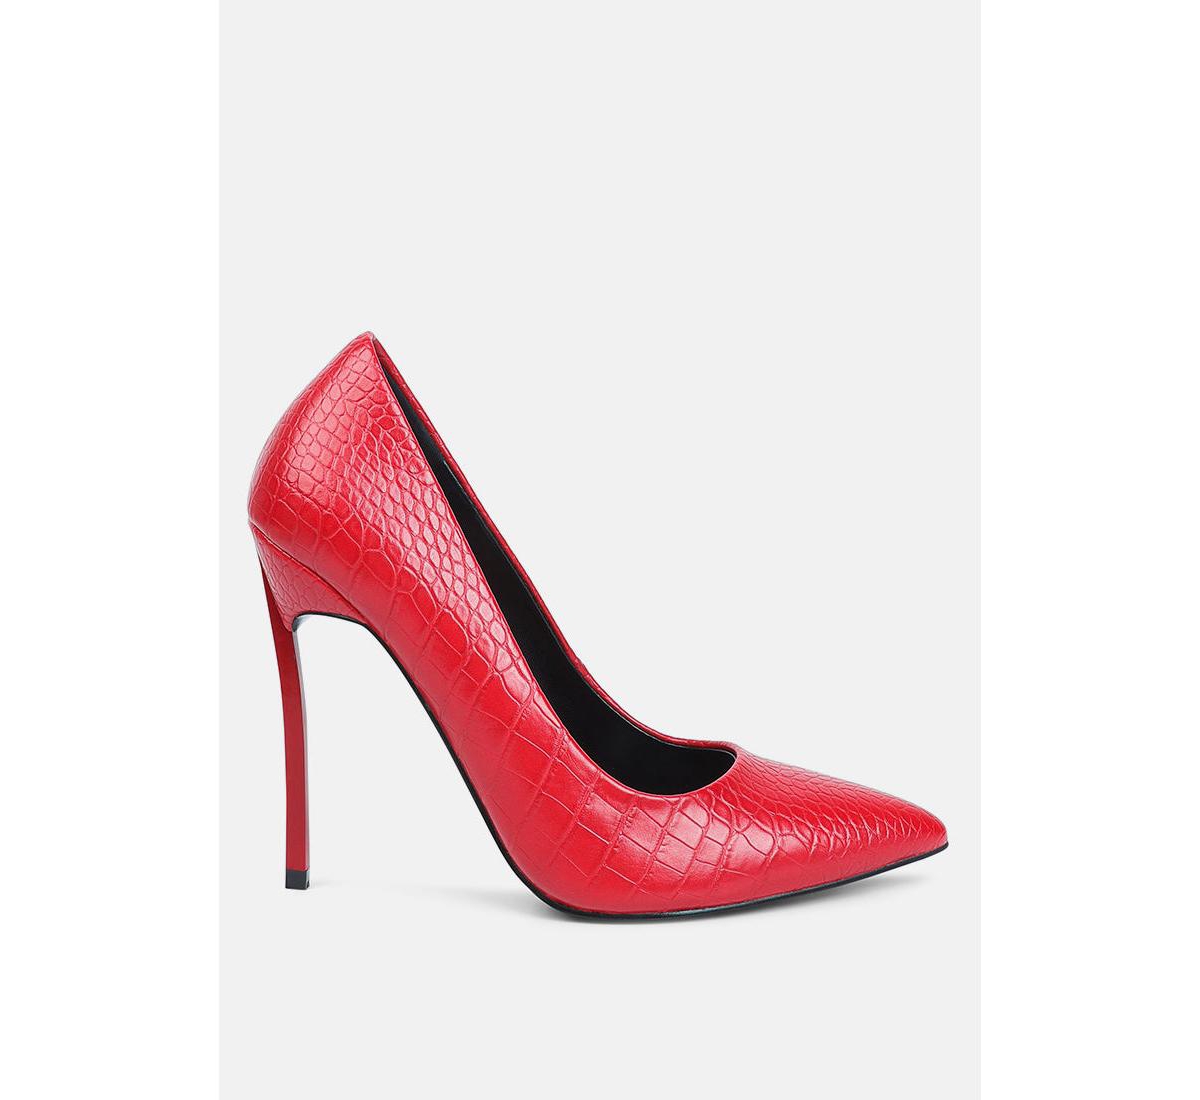 urchin croc high stiletto heel pumps - Red